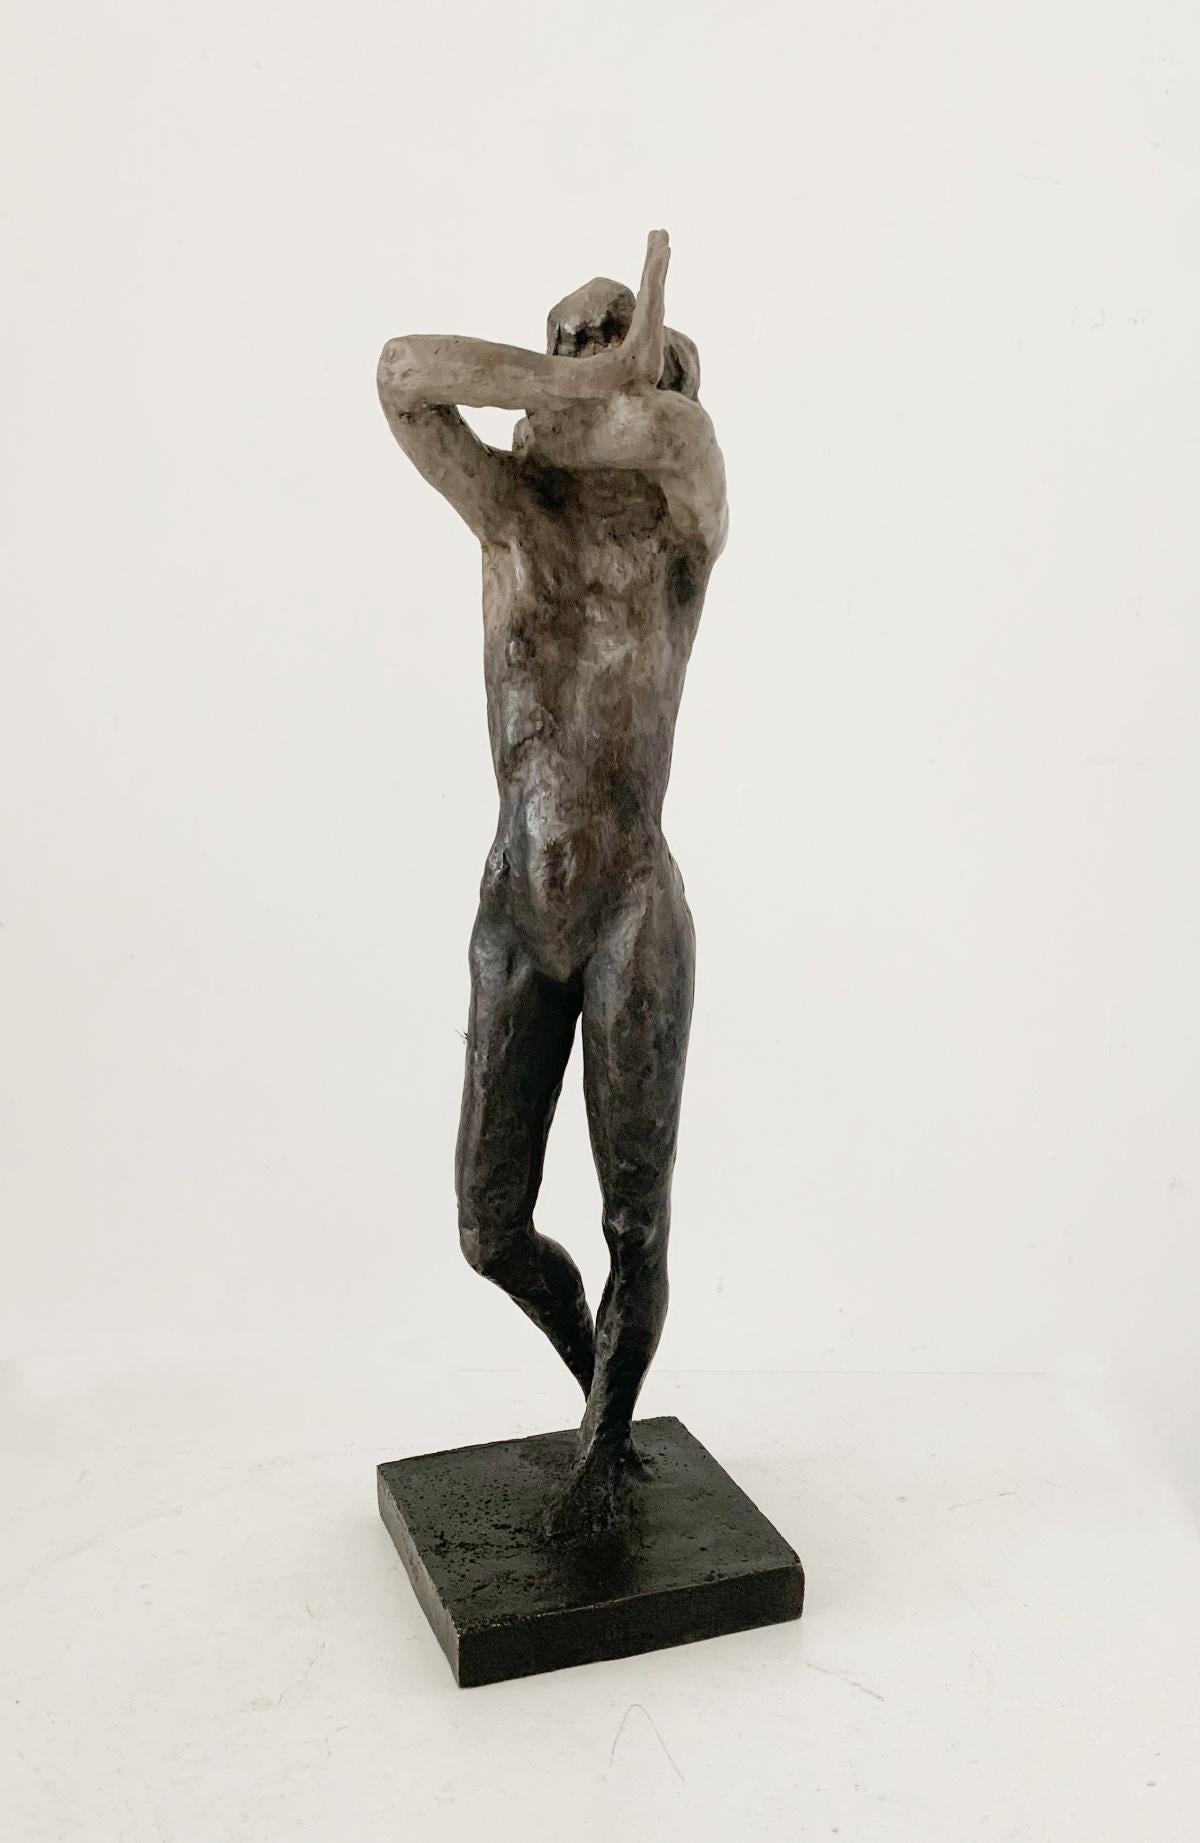 Une femme. Sculpture figurative contemporaine en bronze, art polonais, édition limitée